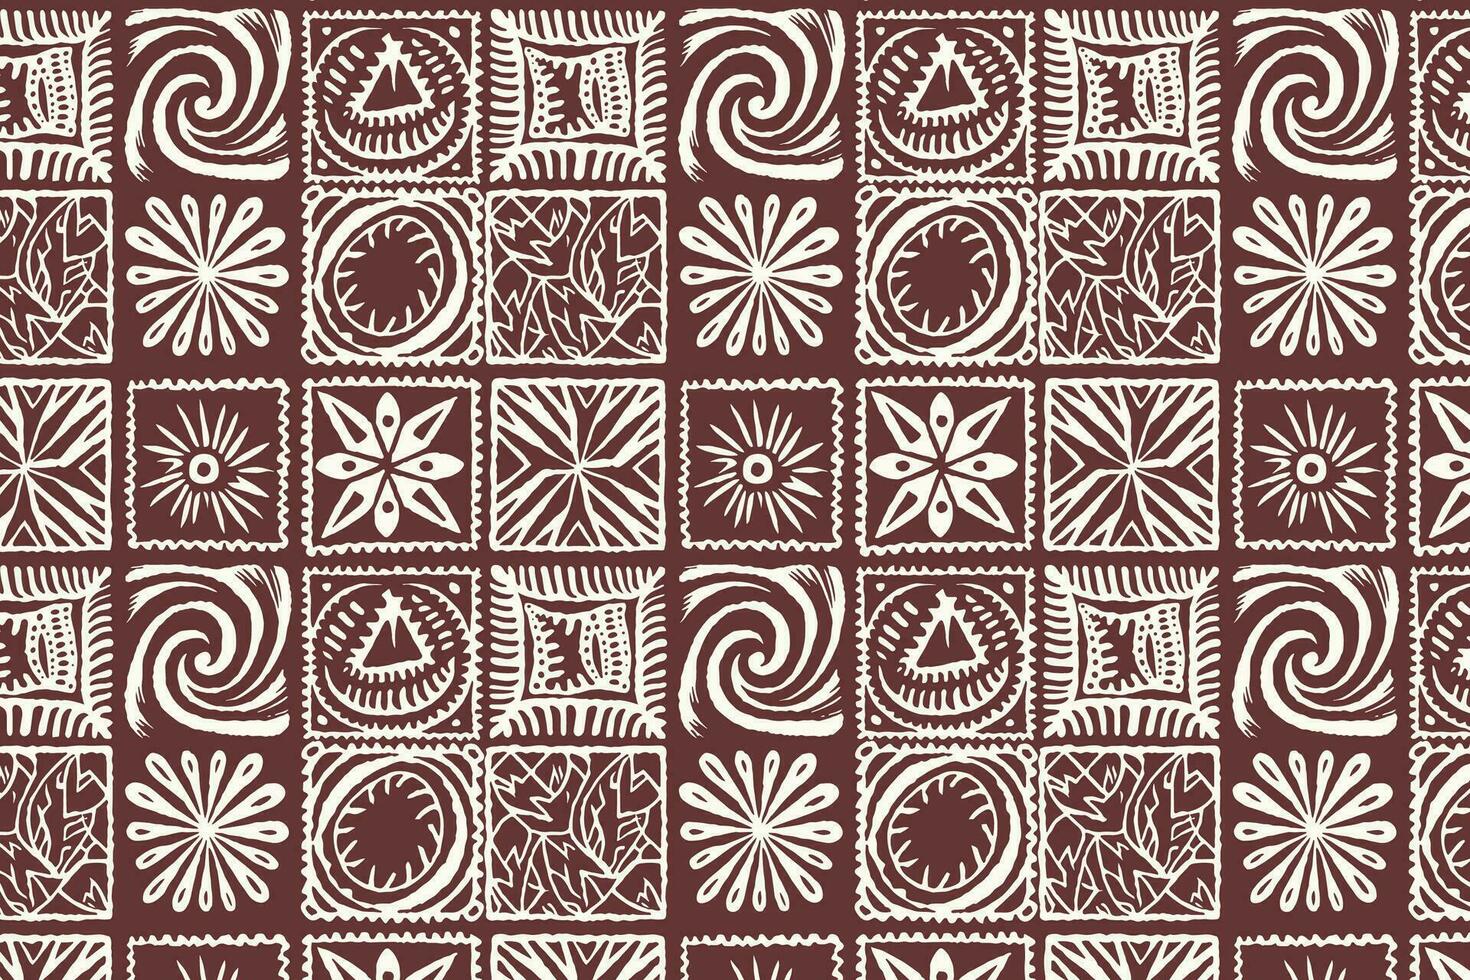 rödbrun och vit geometrisk mönster med blommig och stam- element vektor